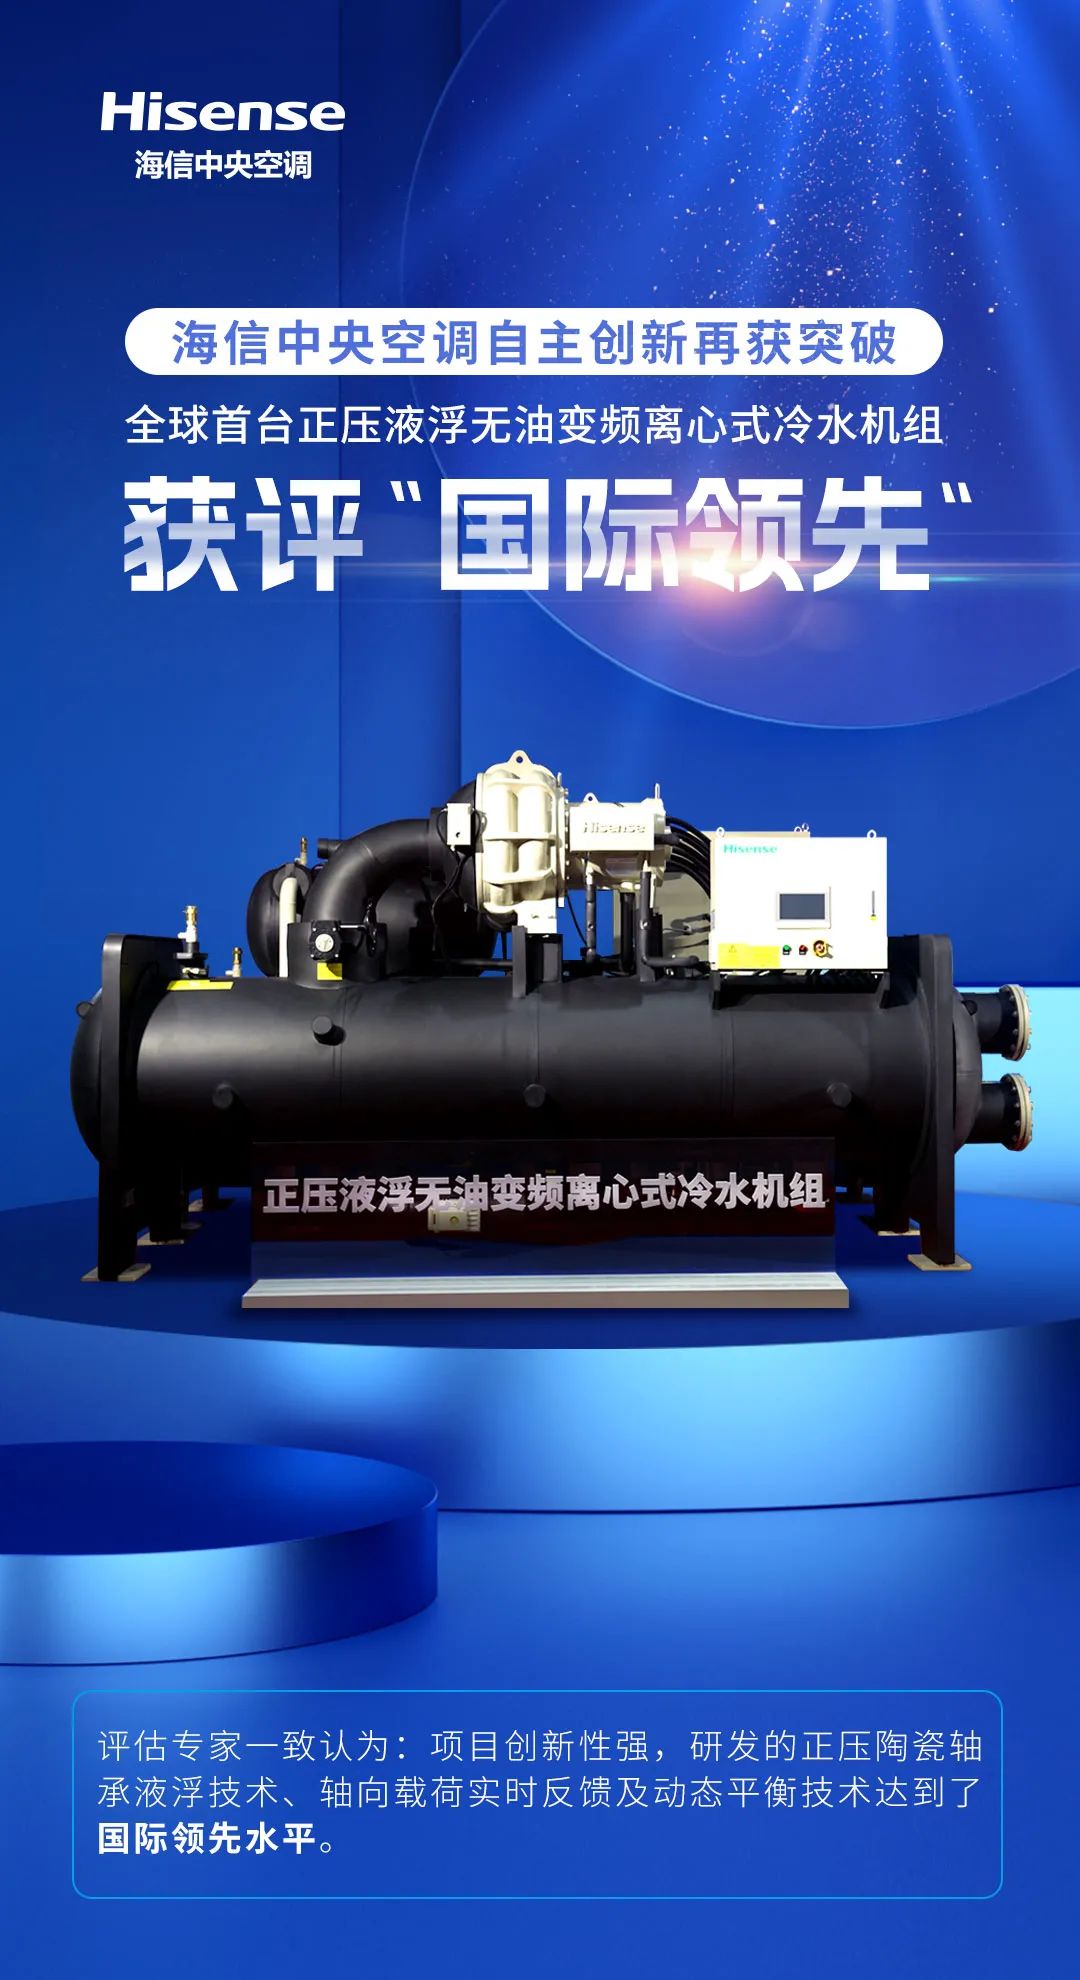 中国制造跨向新台阶 海信正压液浮无油变频离心机成功下线